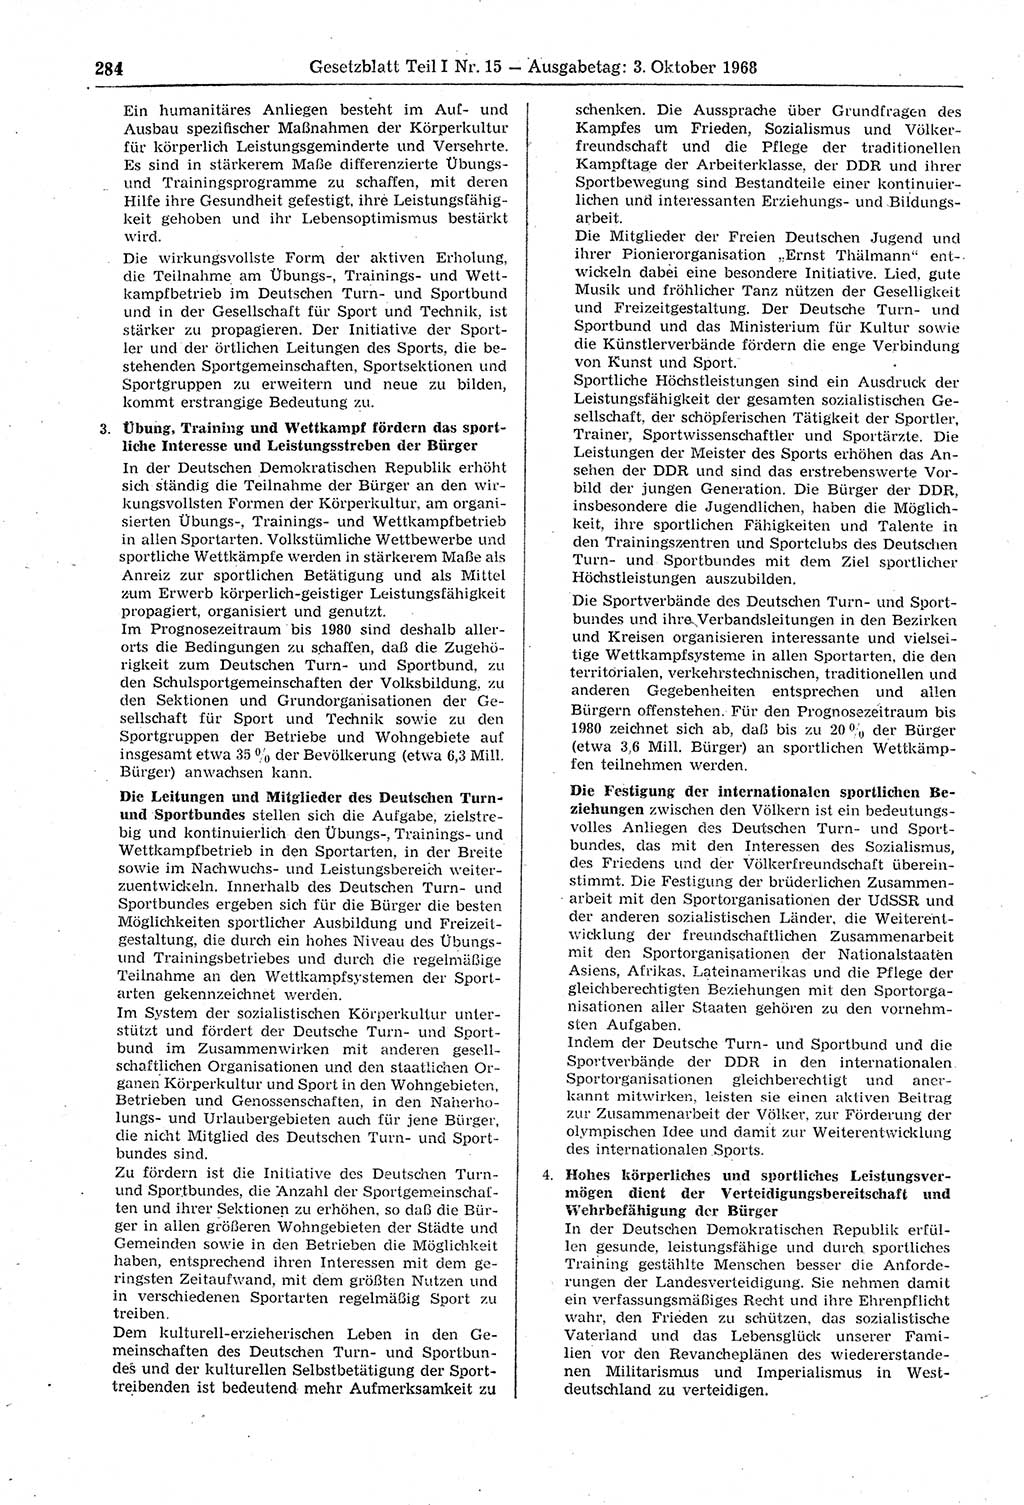 Gesetzblatt (GBl.) der Deutschen Demokratischen Republik (DDR) Teil Ⅰ 1968, Seite 284 (GBl. DDR Ⅰ 1968, S. 284)